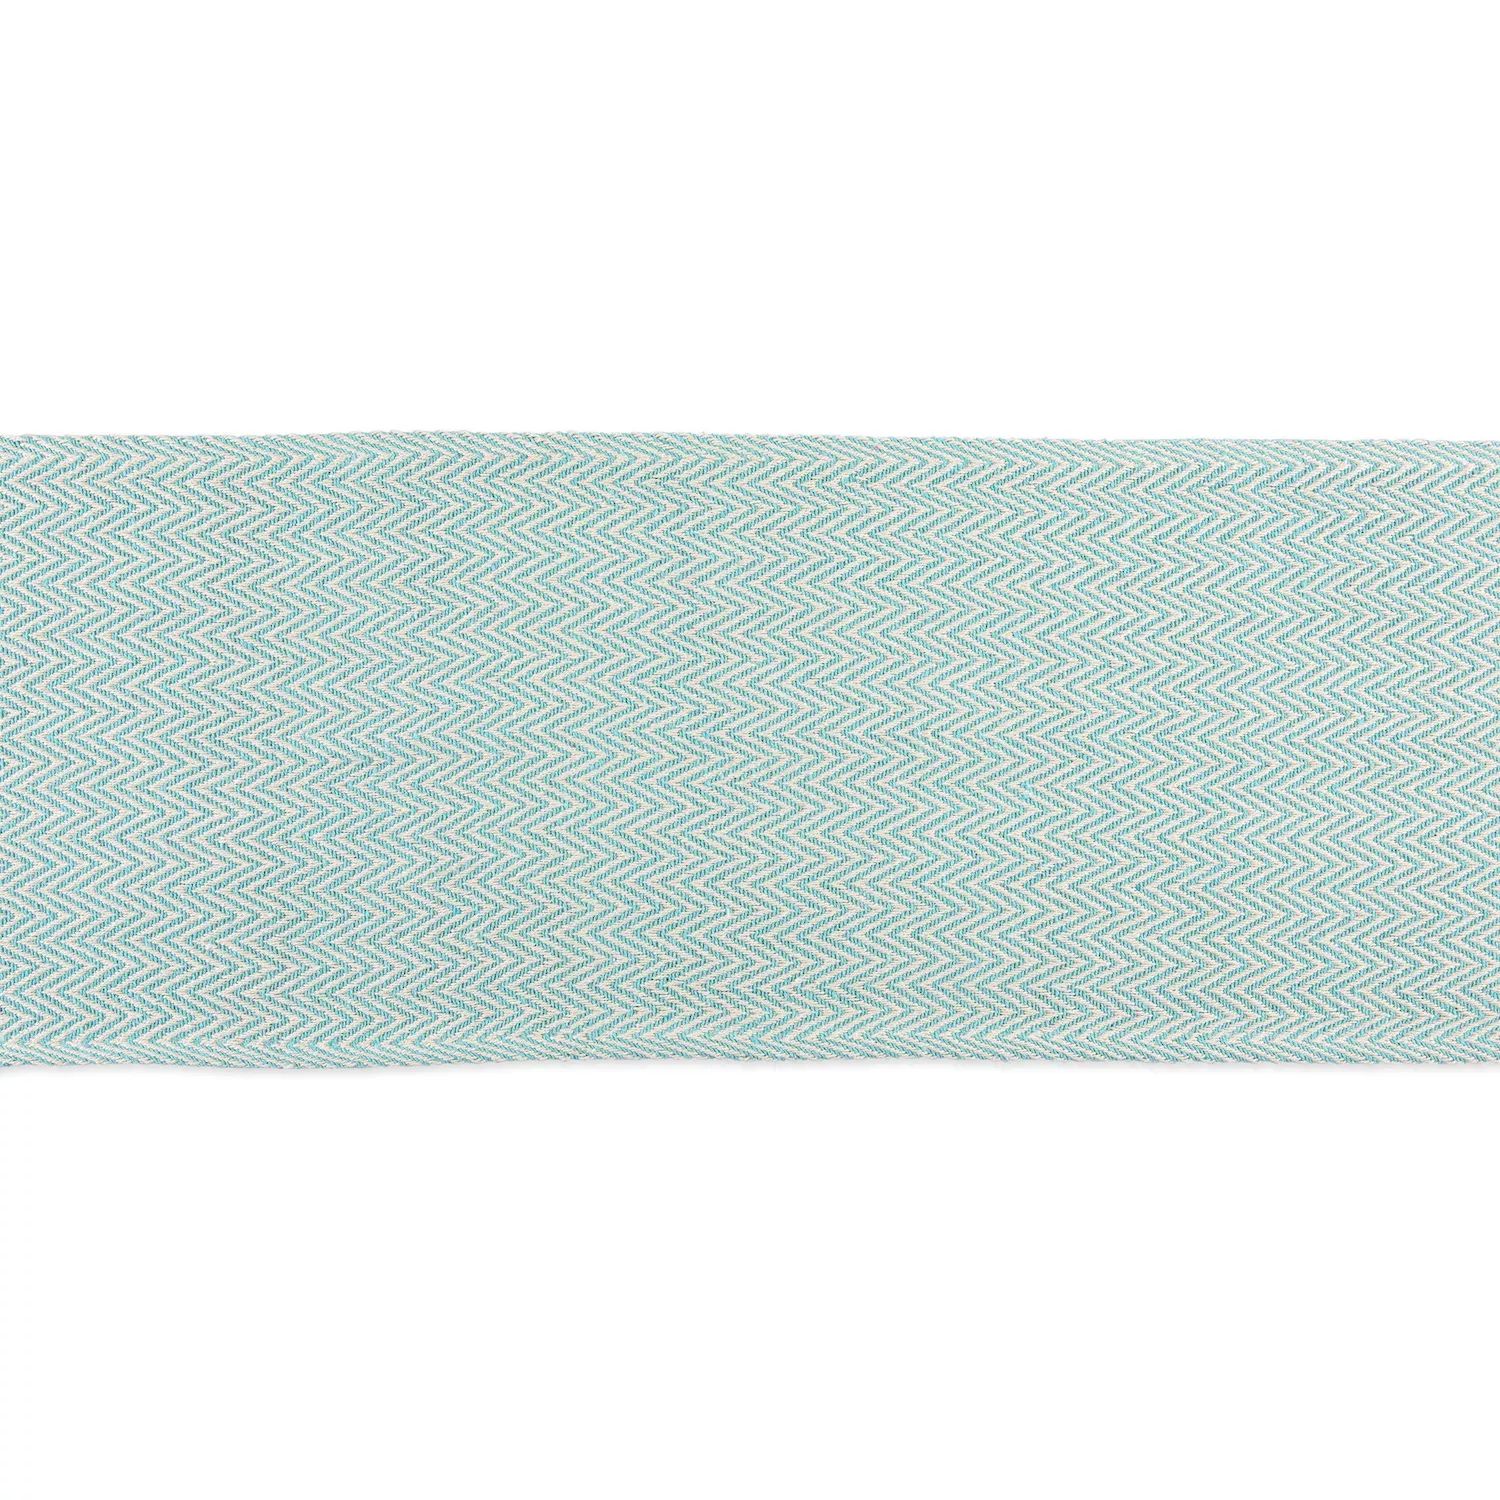 72-дюймовая прямоугольная скатерть с шевронным плетением цвета морской волны и белого цвета 72 дюймовая прямоугольная скатерть с шевронным плетением цвета морской волны и белого цвета